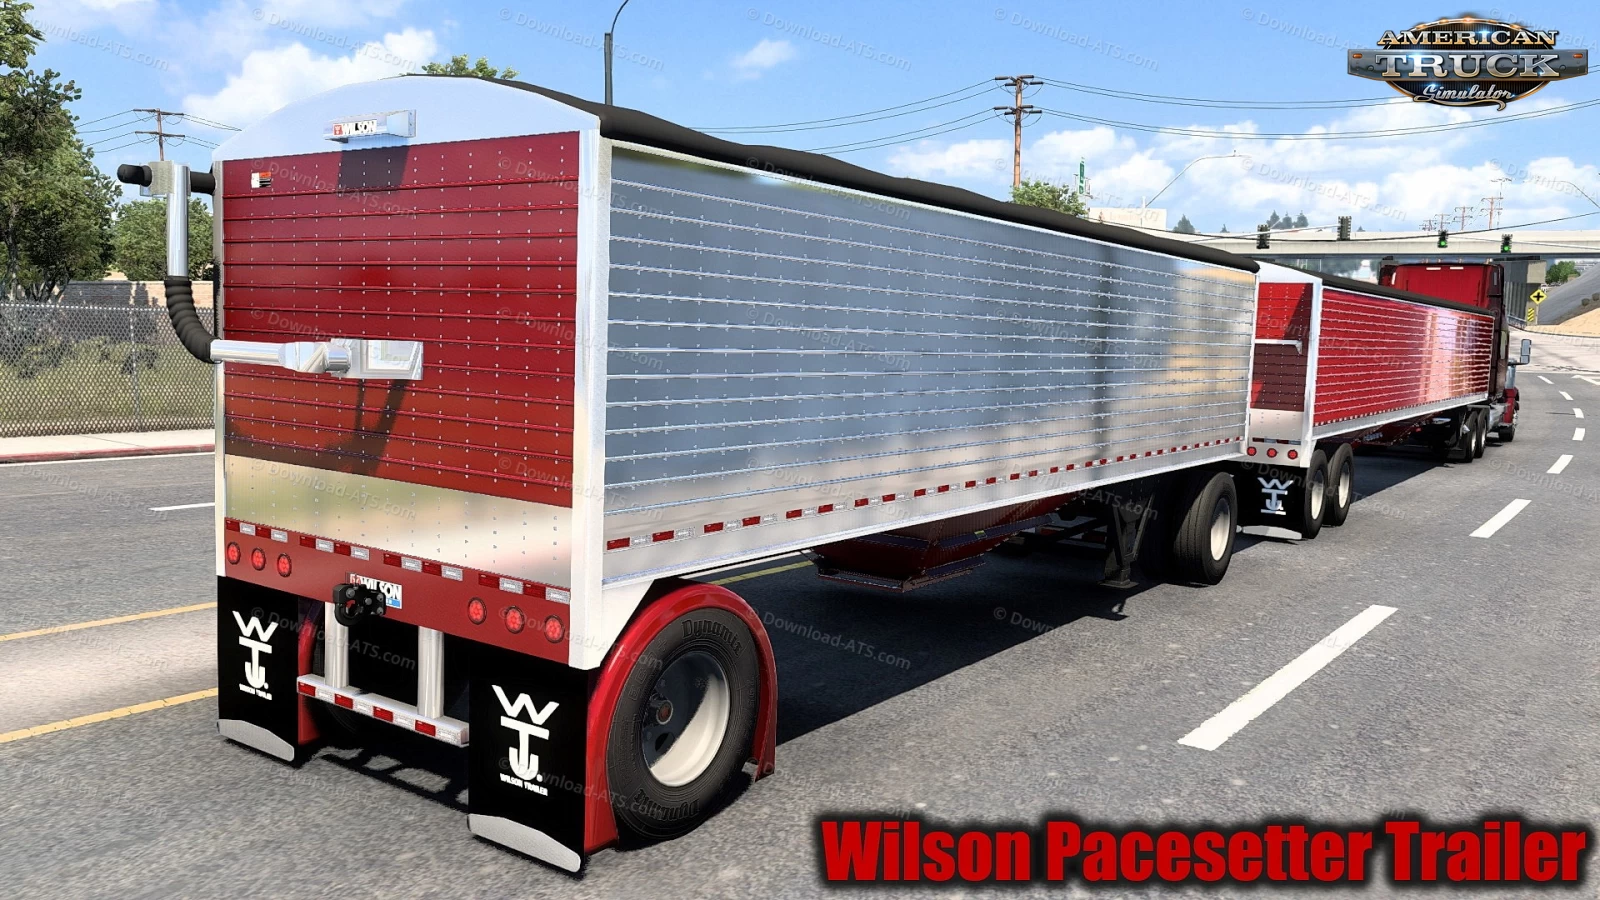 Wilson Pacesetter Trailer v1.2 (1.46.x) for ATS